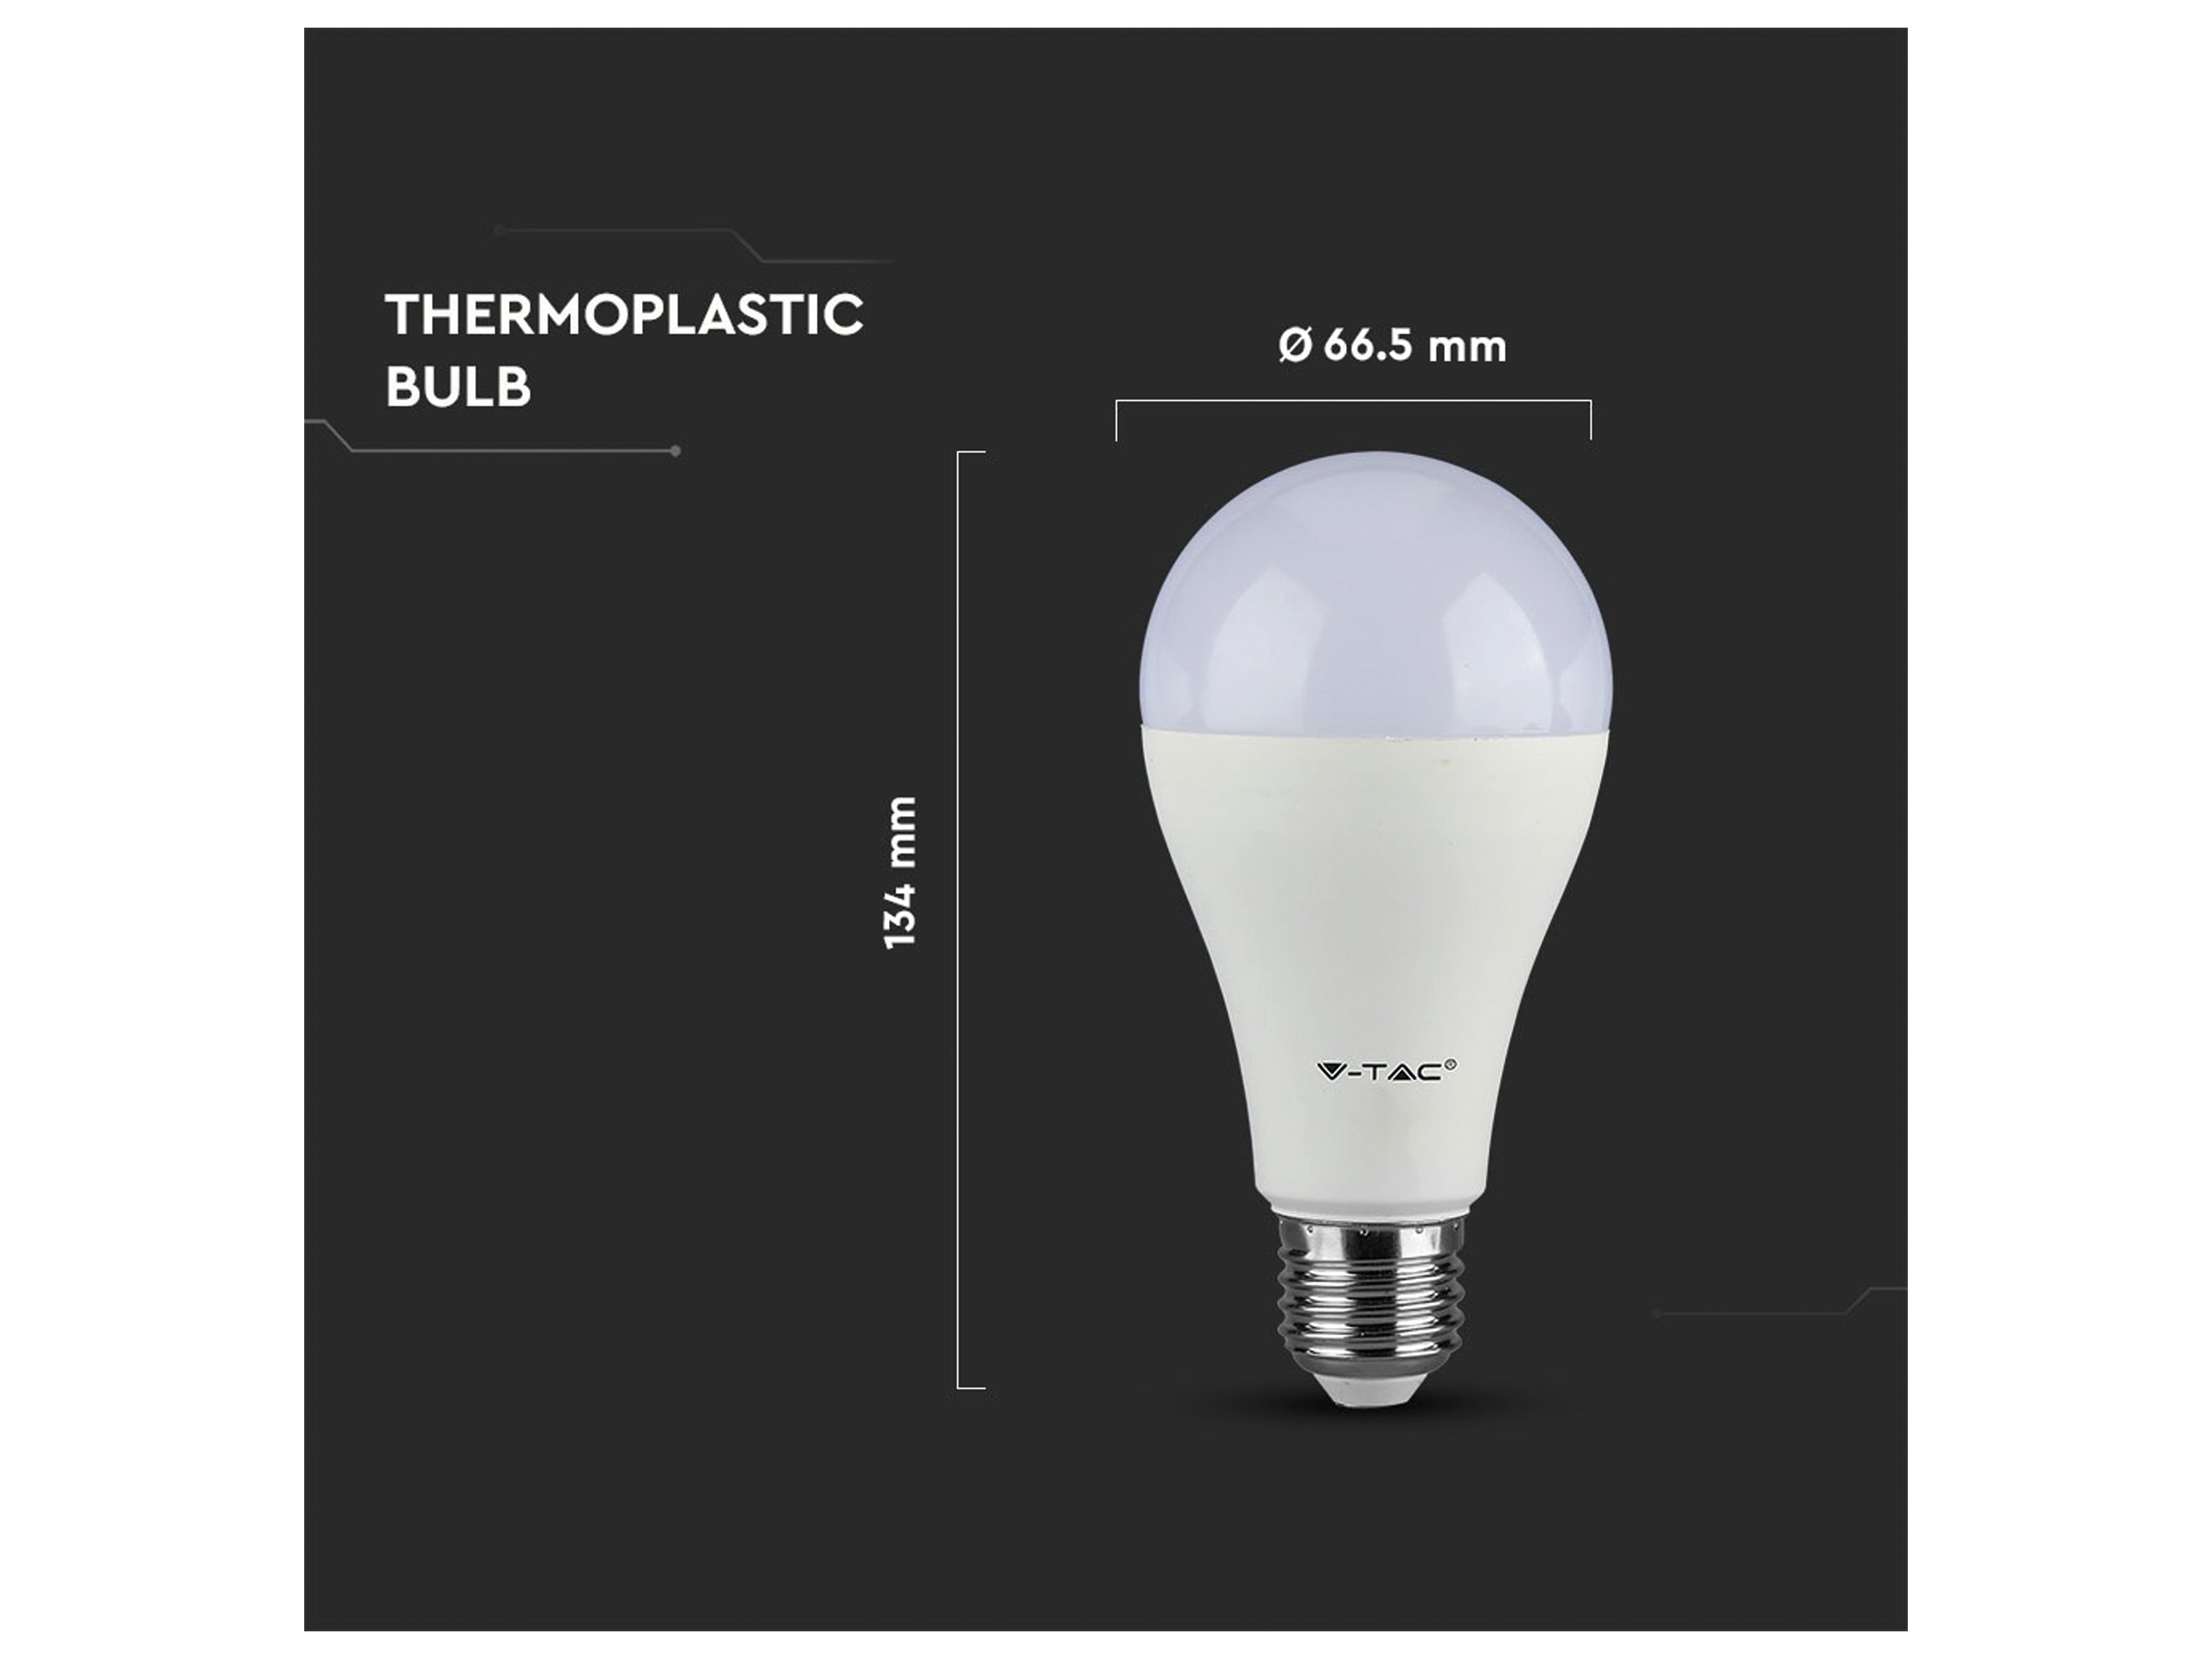 V-TAC LED-Lampe VT-2015(4453), E27, EEK: F, 15 W, 1350 lm, 2700 K